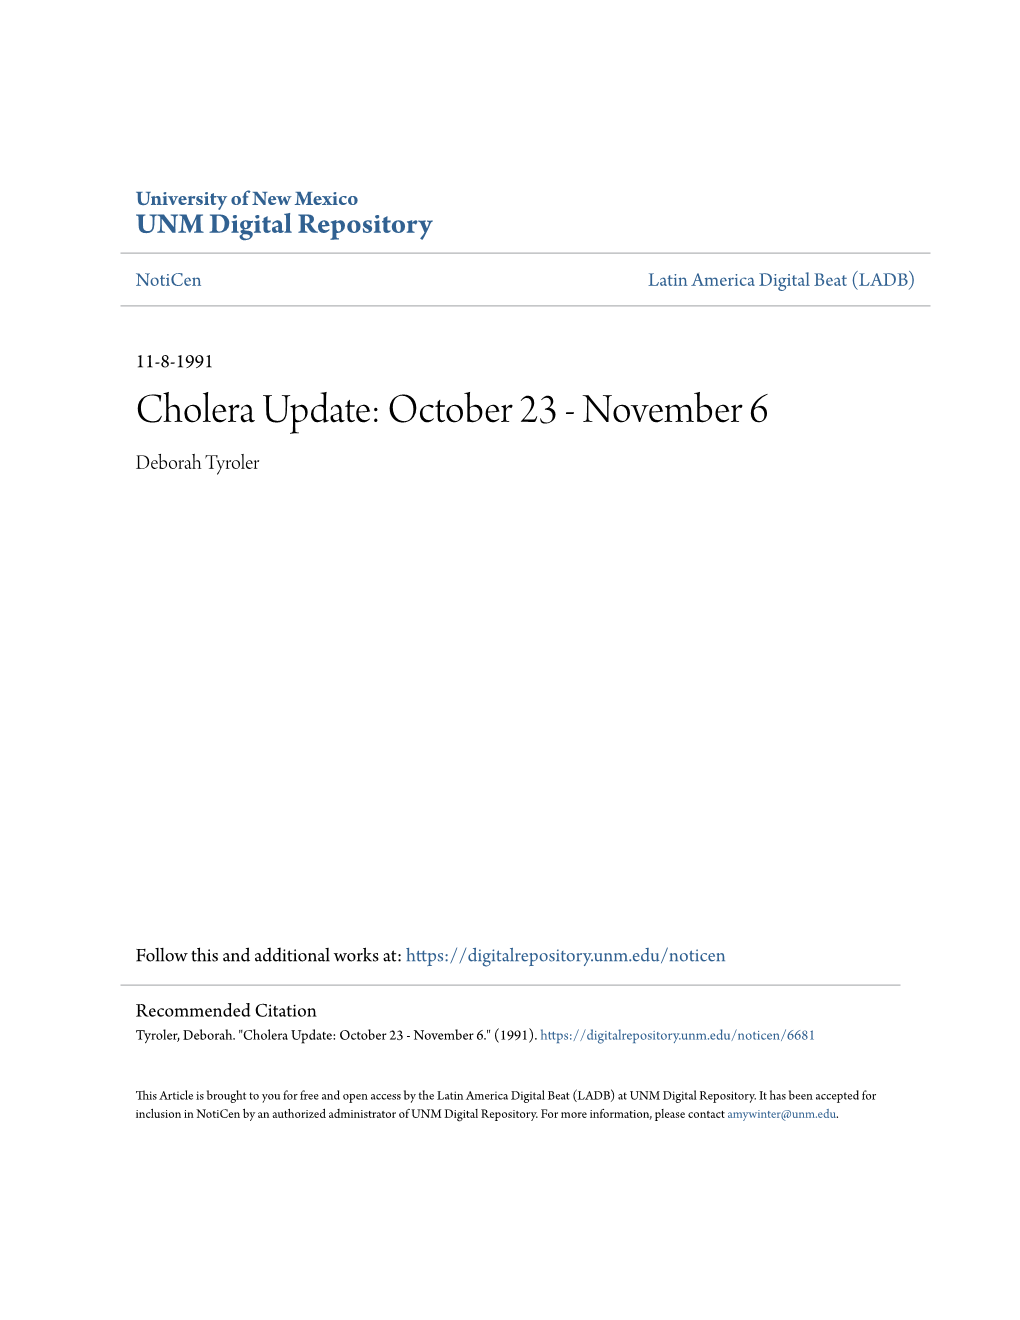 Cholera Update: October 23 - November 6 Deborah Tyroler